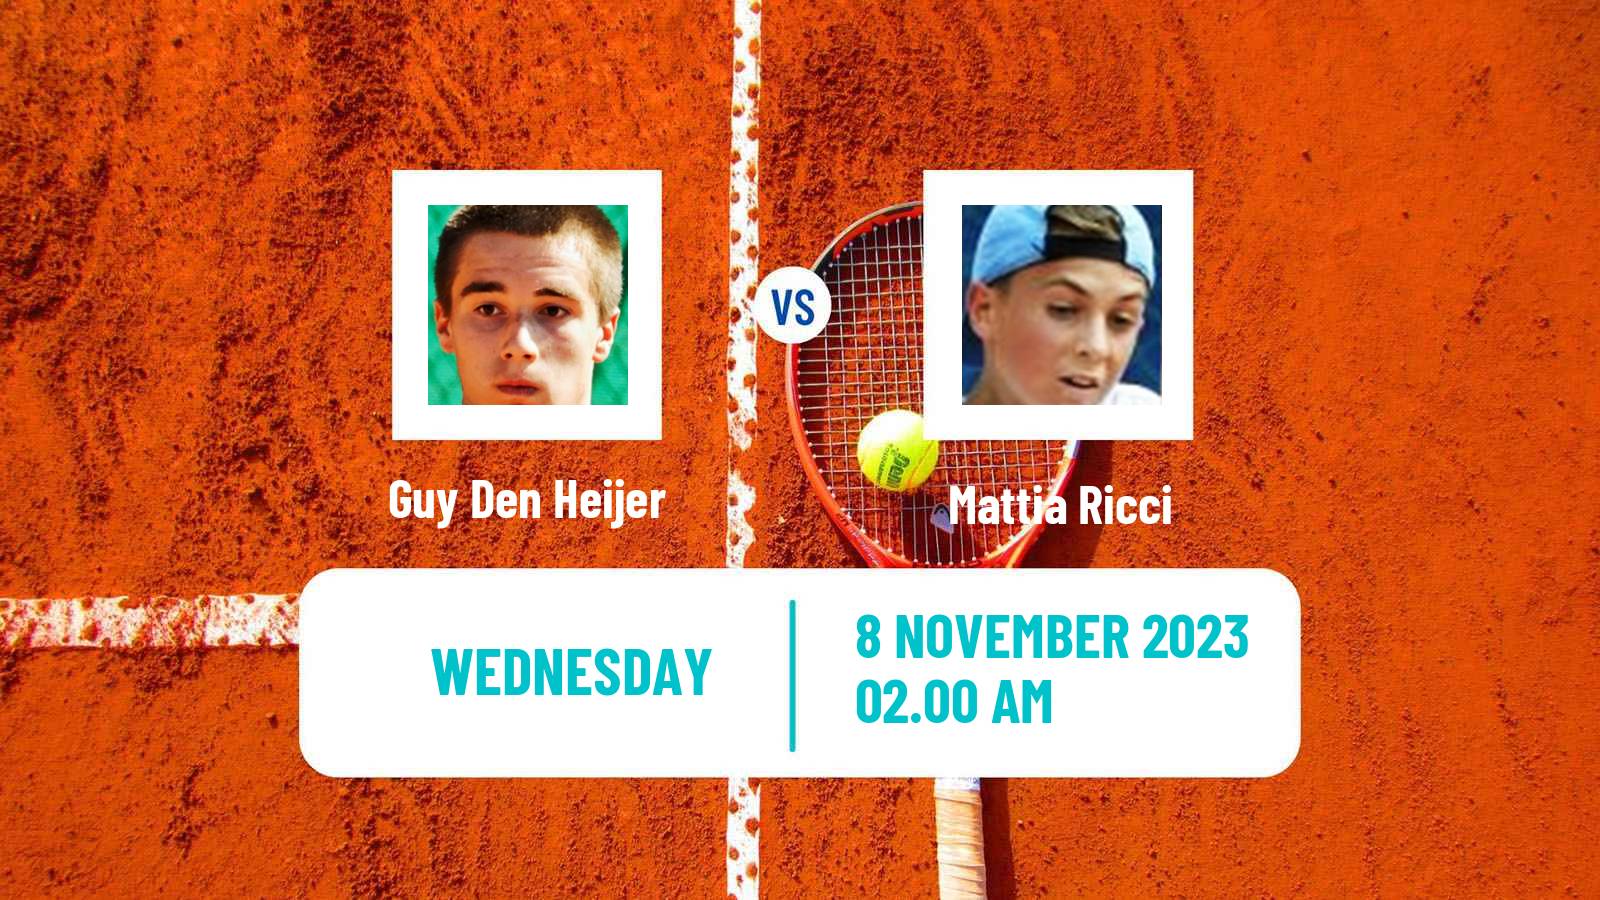 Tennis ITF M25 Heraklion 2 Men Guy Den Heijer - Mattia Ricci